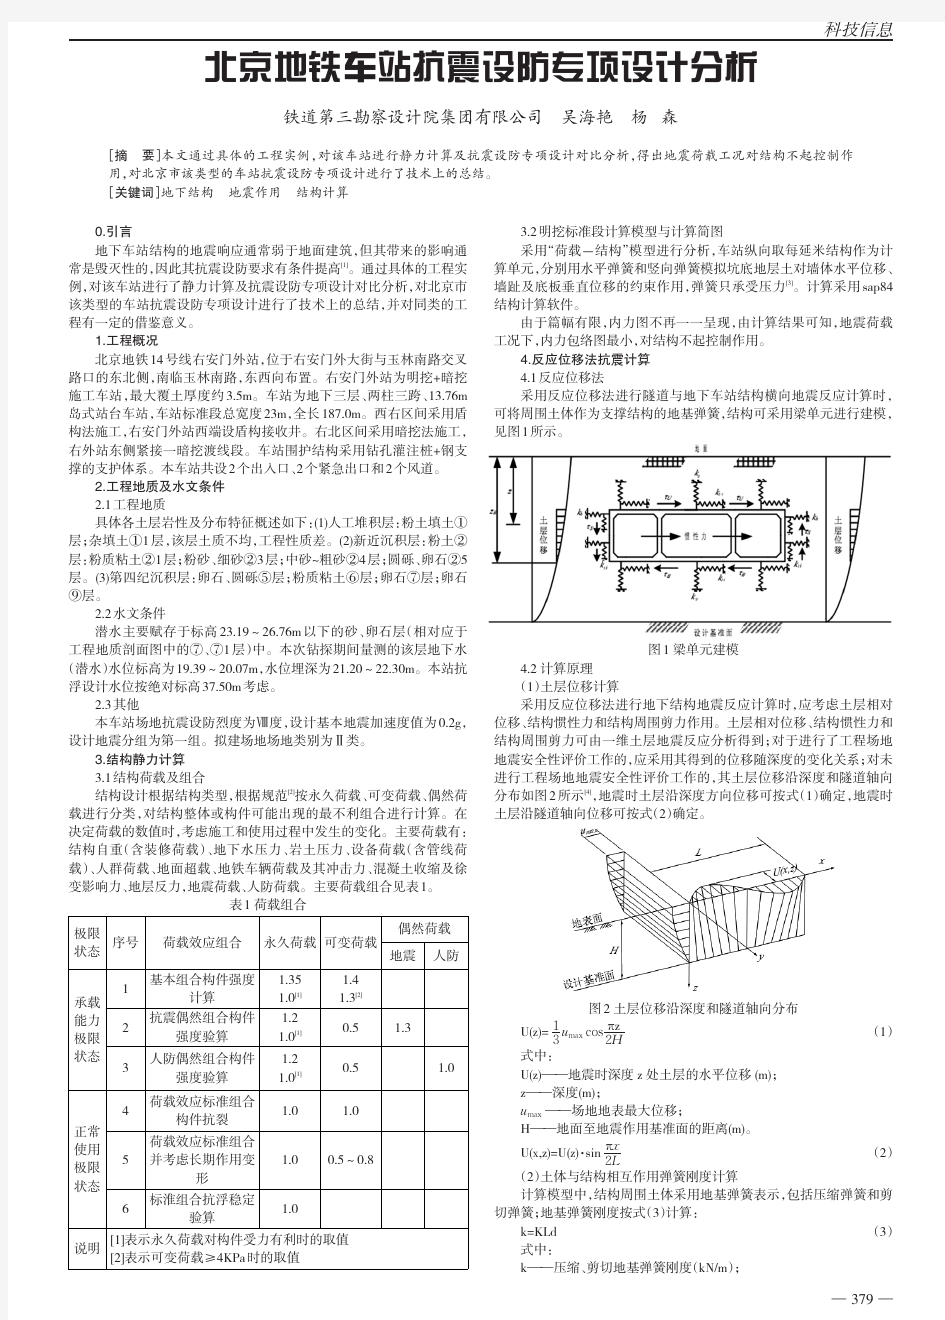 北京地铁车站抗震设防专项设计分析